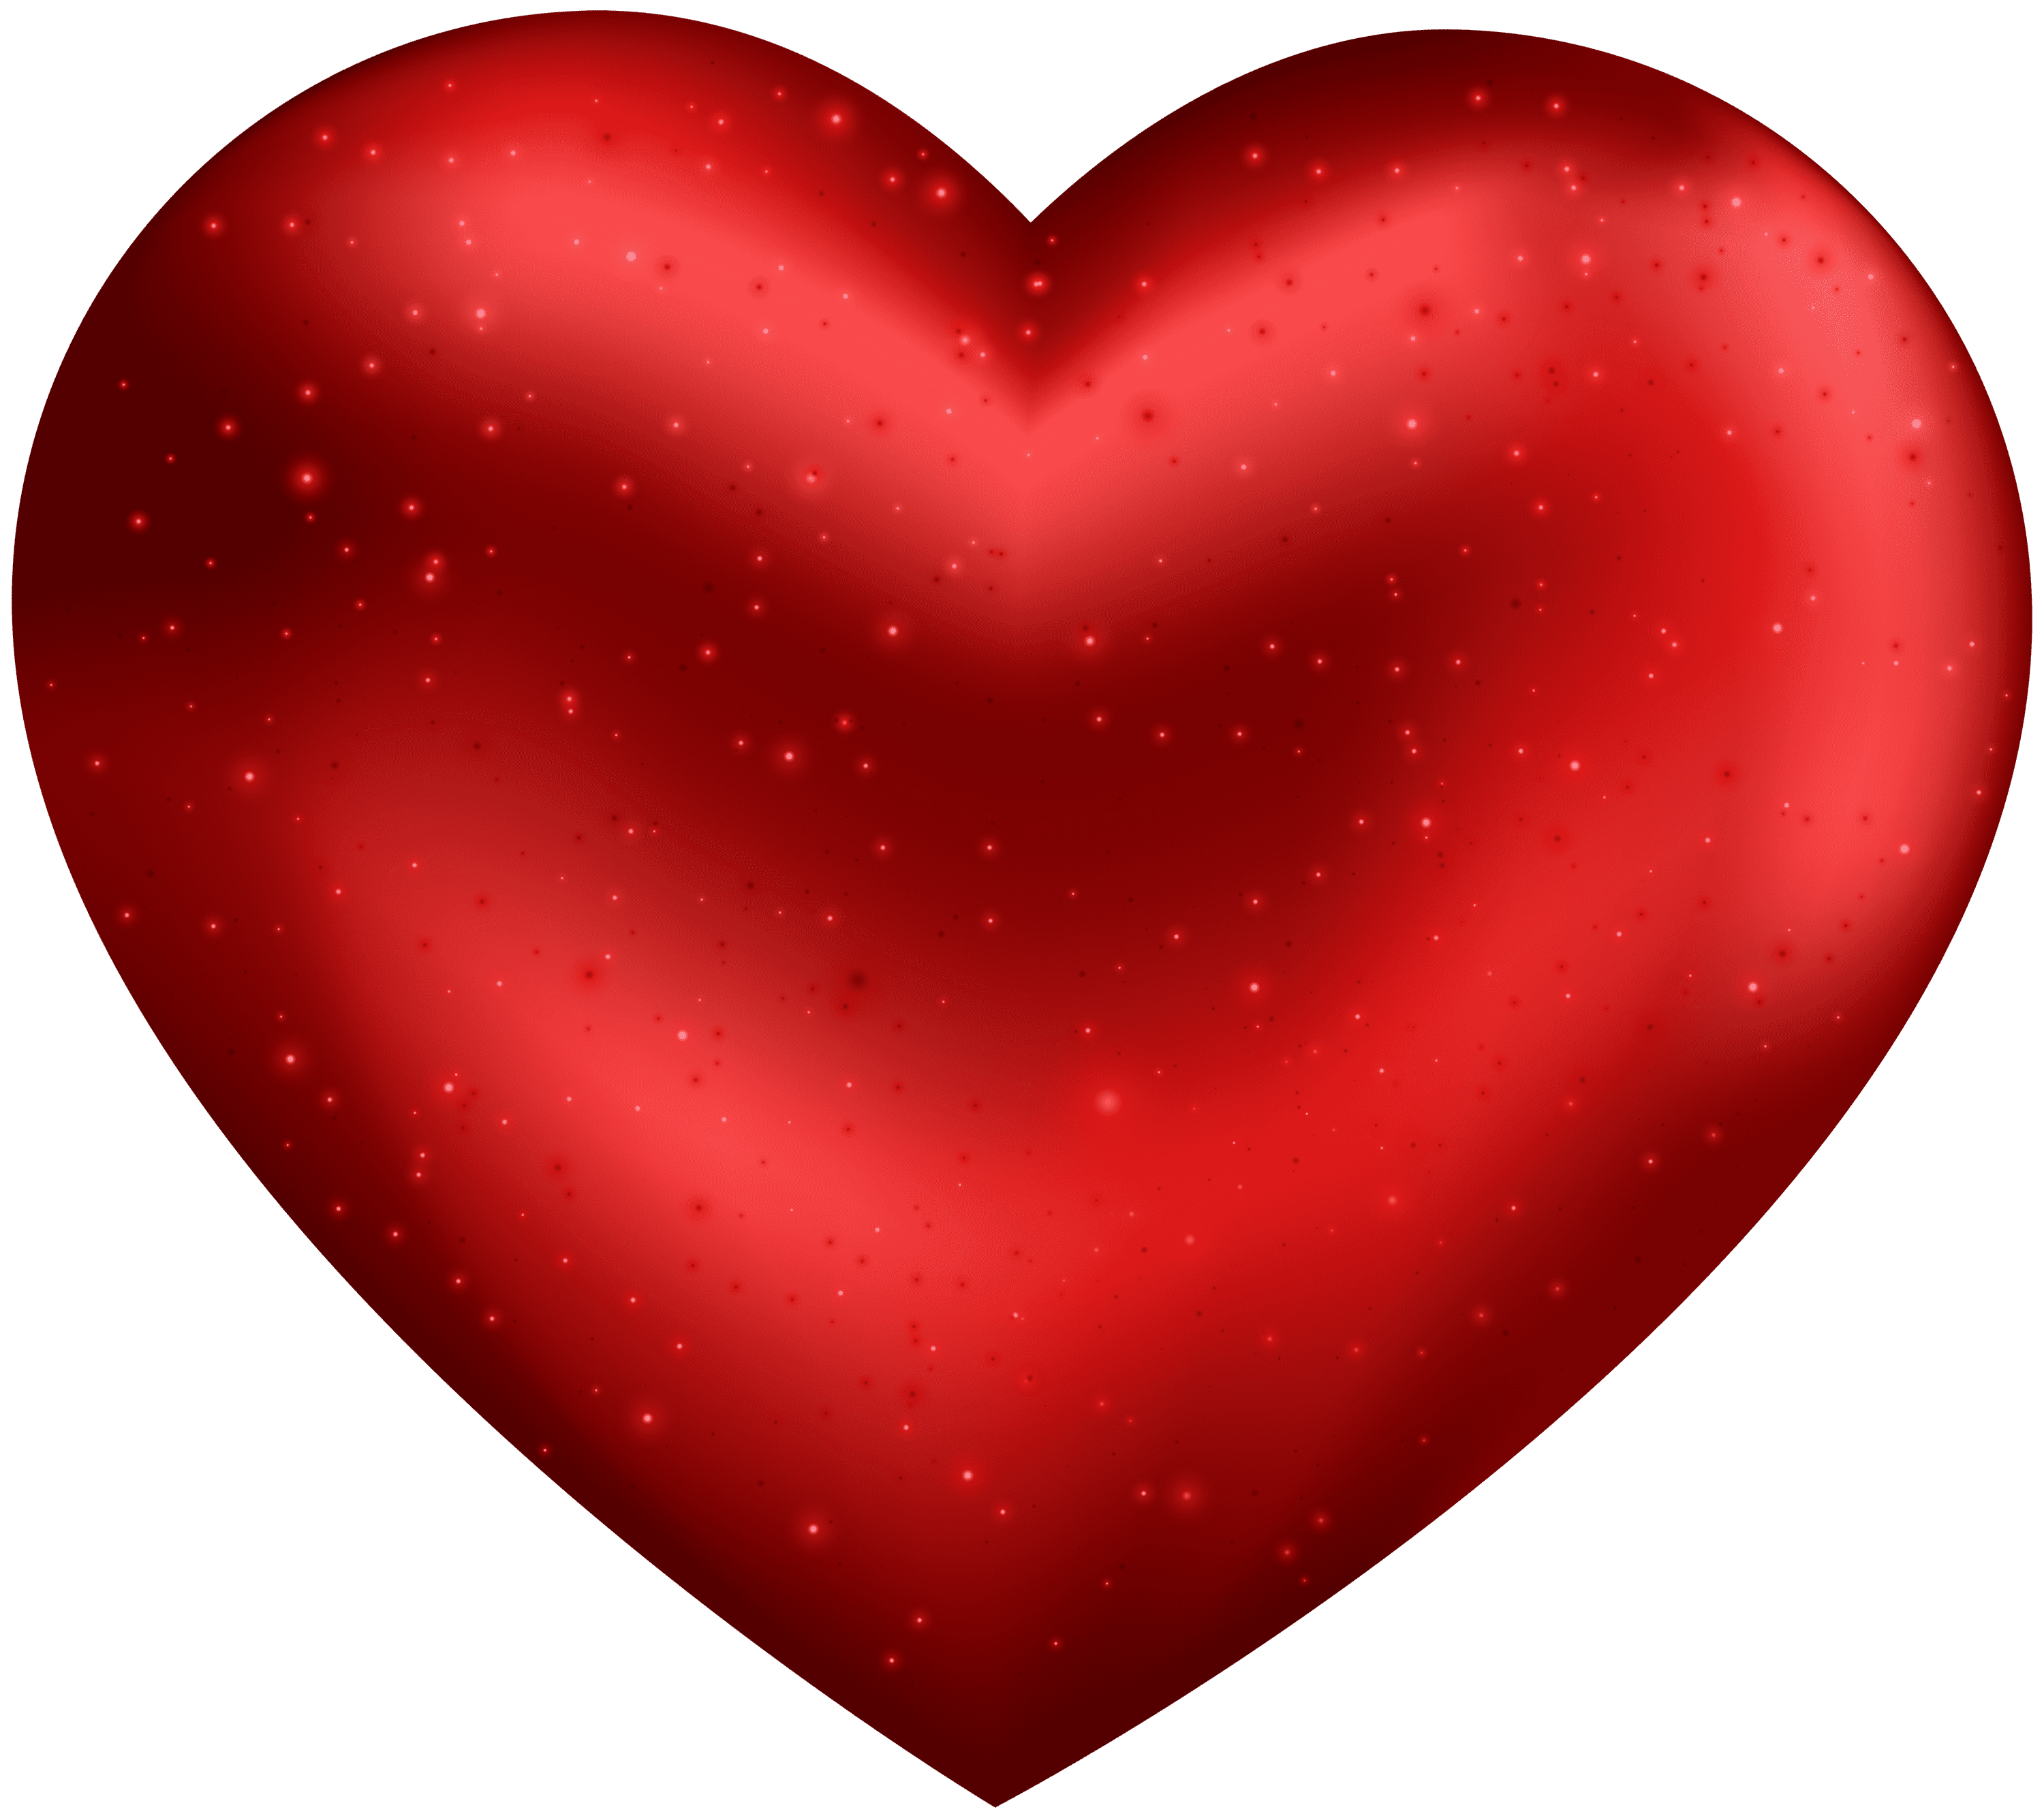 Deap Red Heart Transparent Clipart